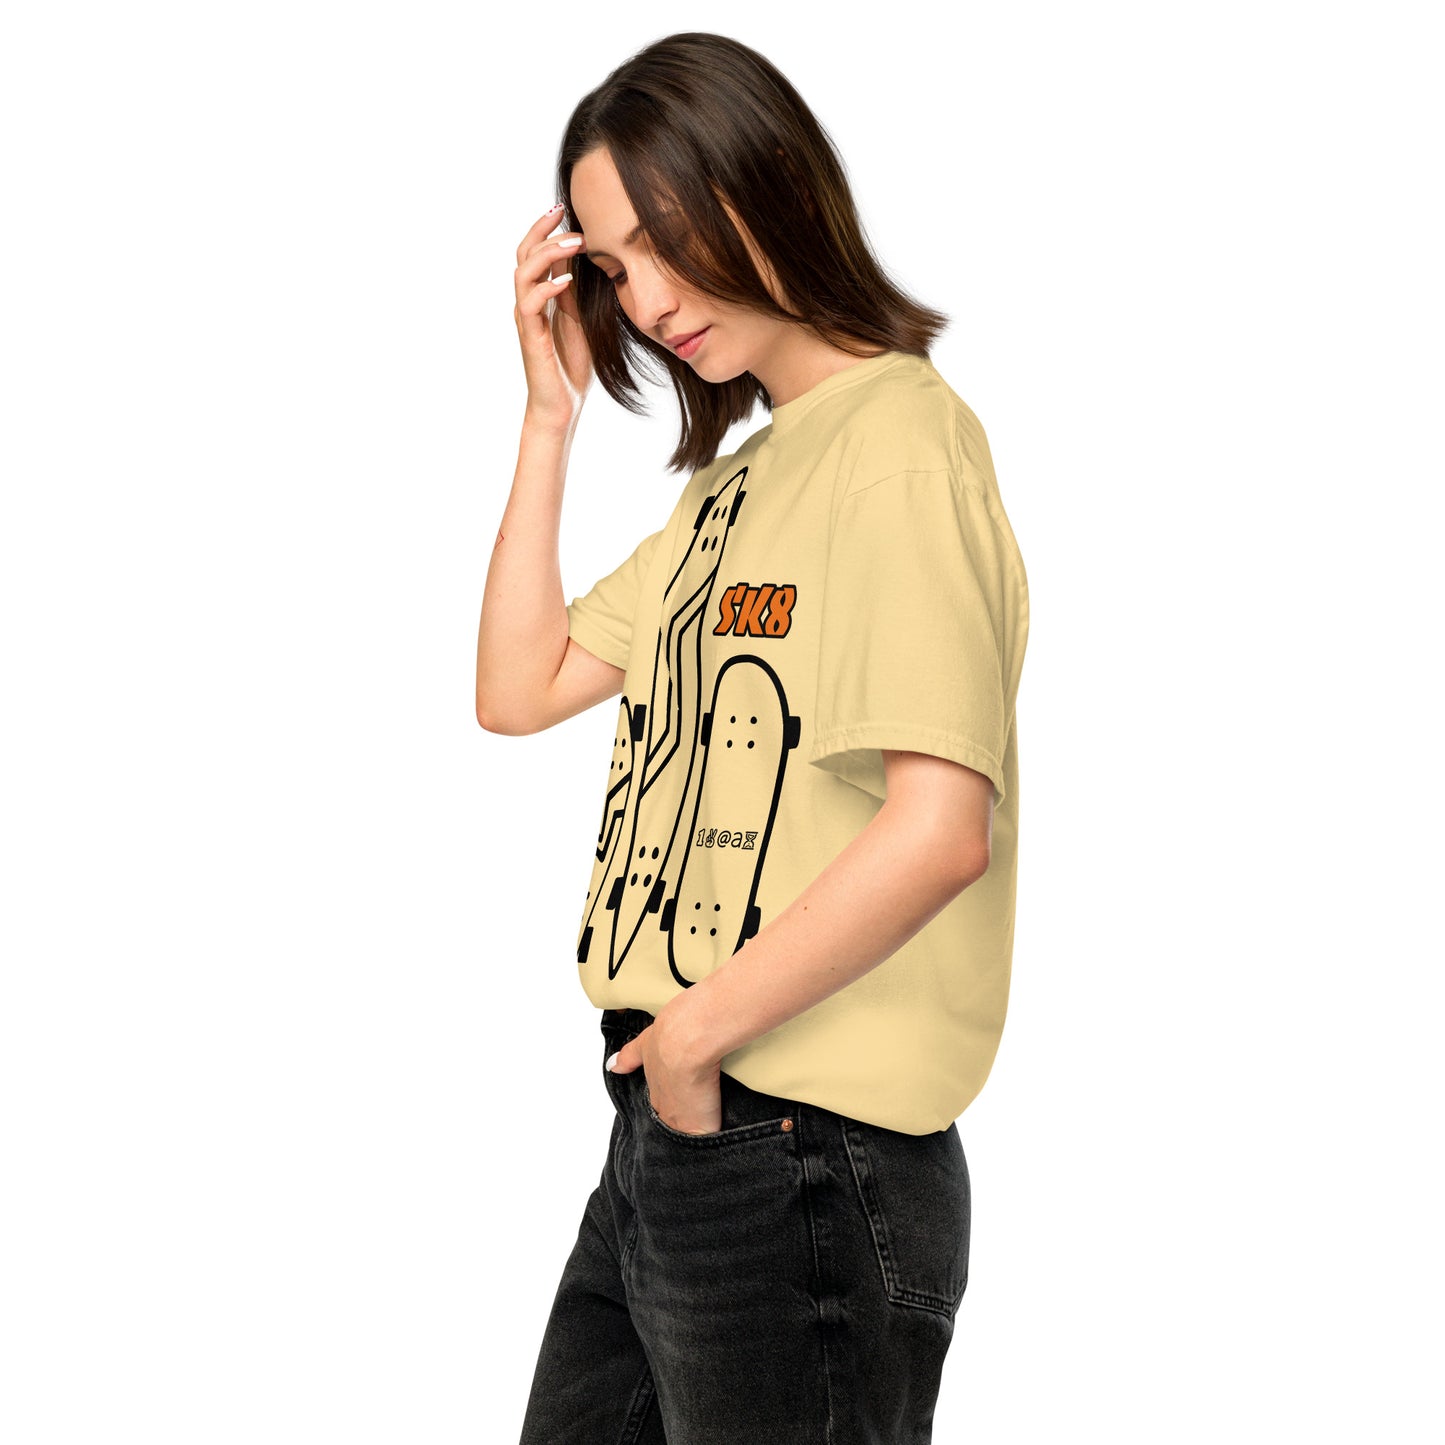 Unisex garment-dyed heavyweight t-shirt SK8